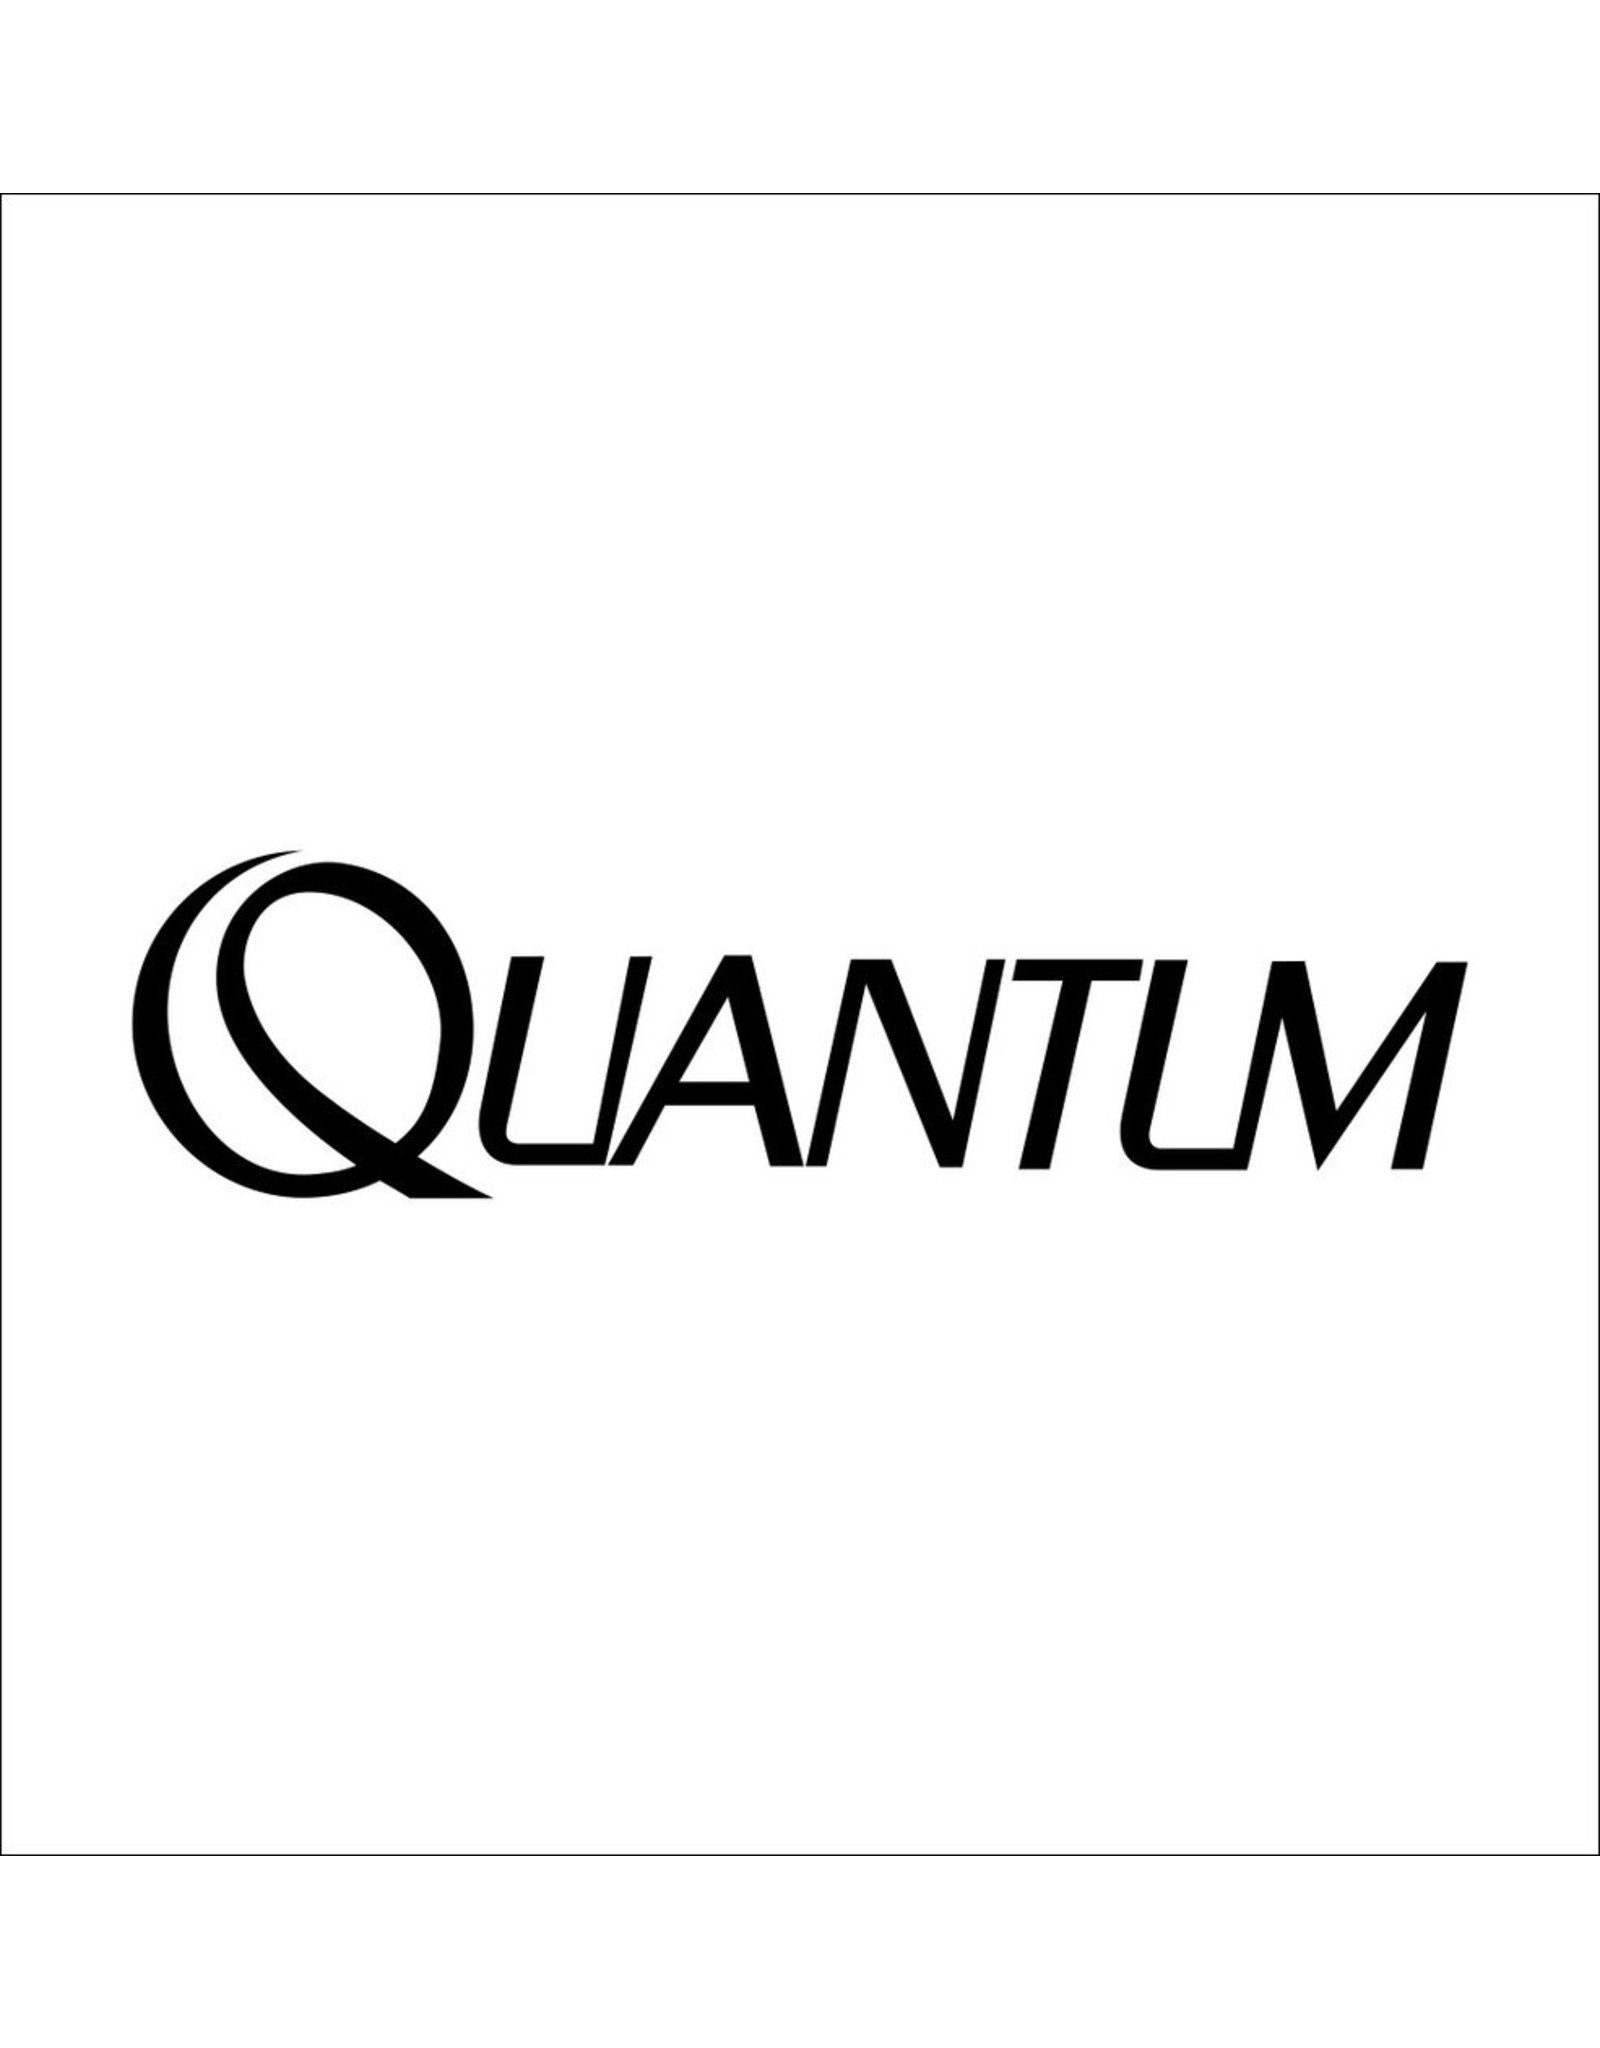 Quantum CX104-01  RELEASE SLIDER SPRING